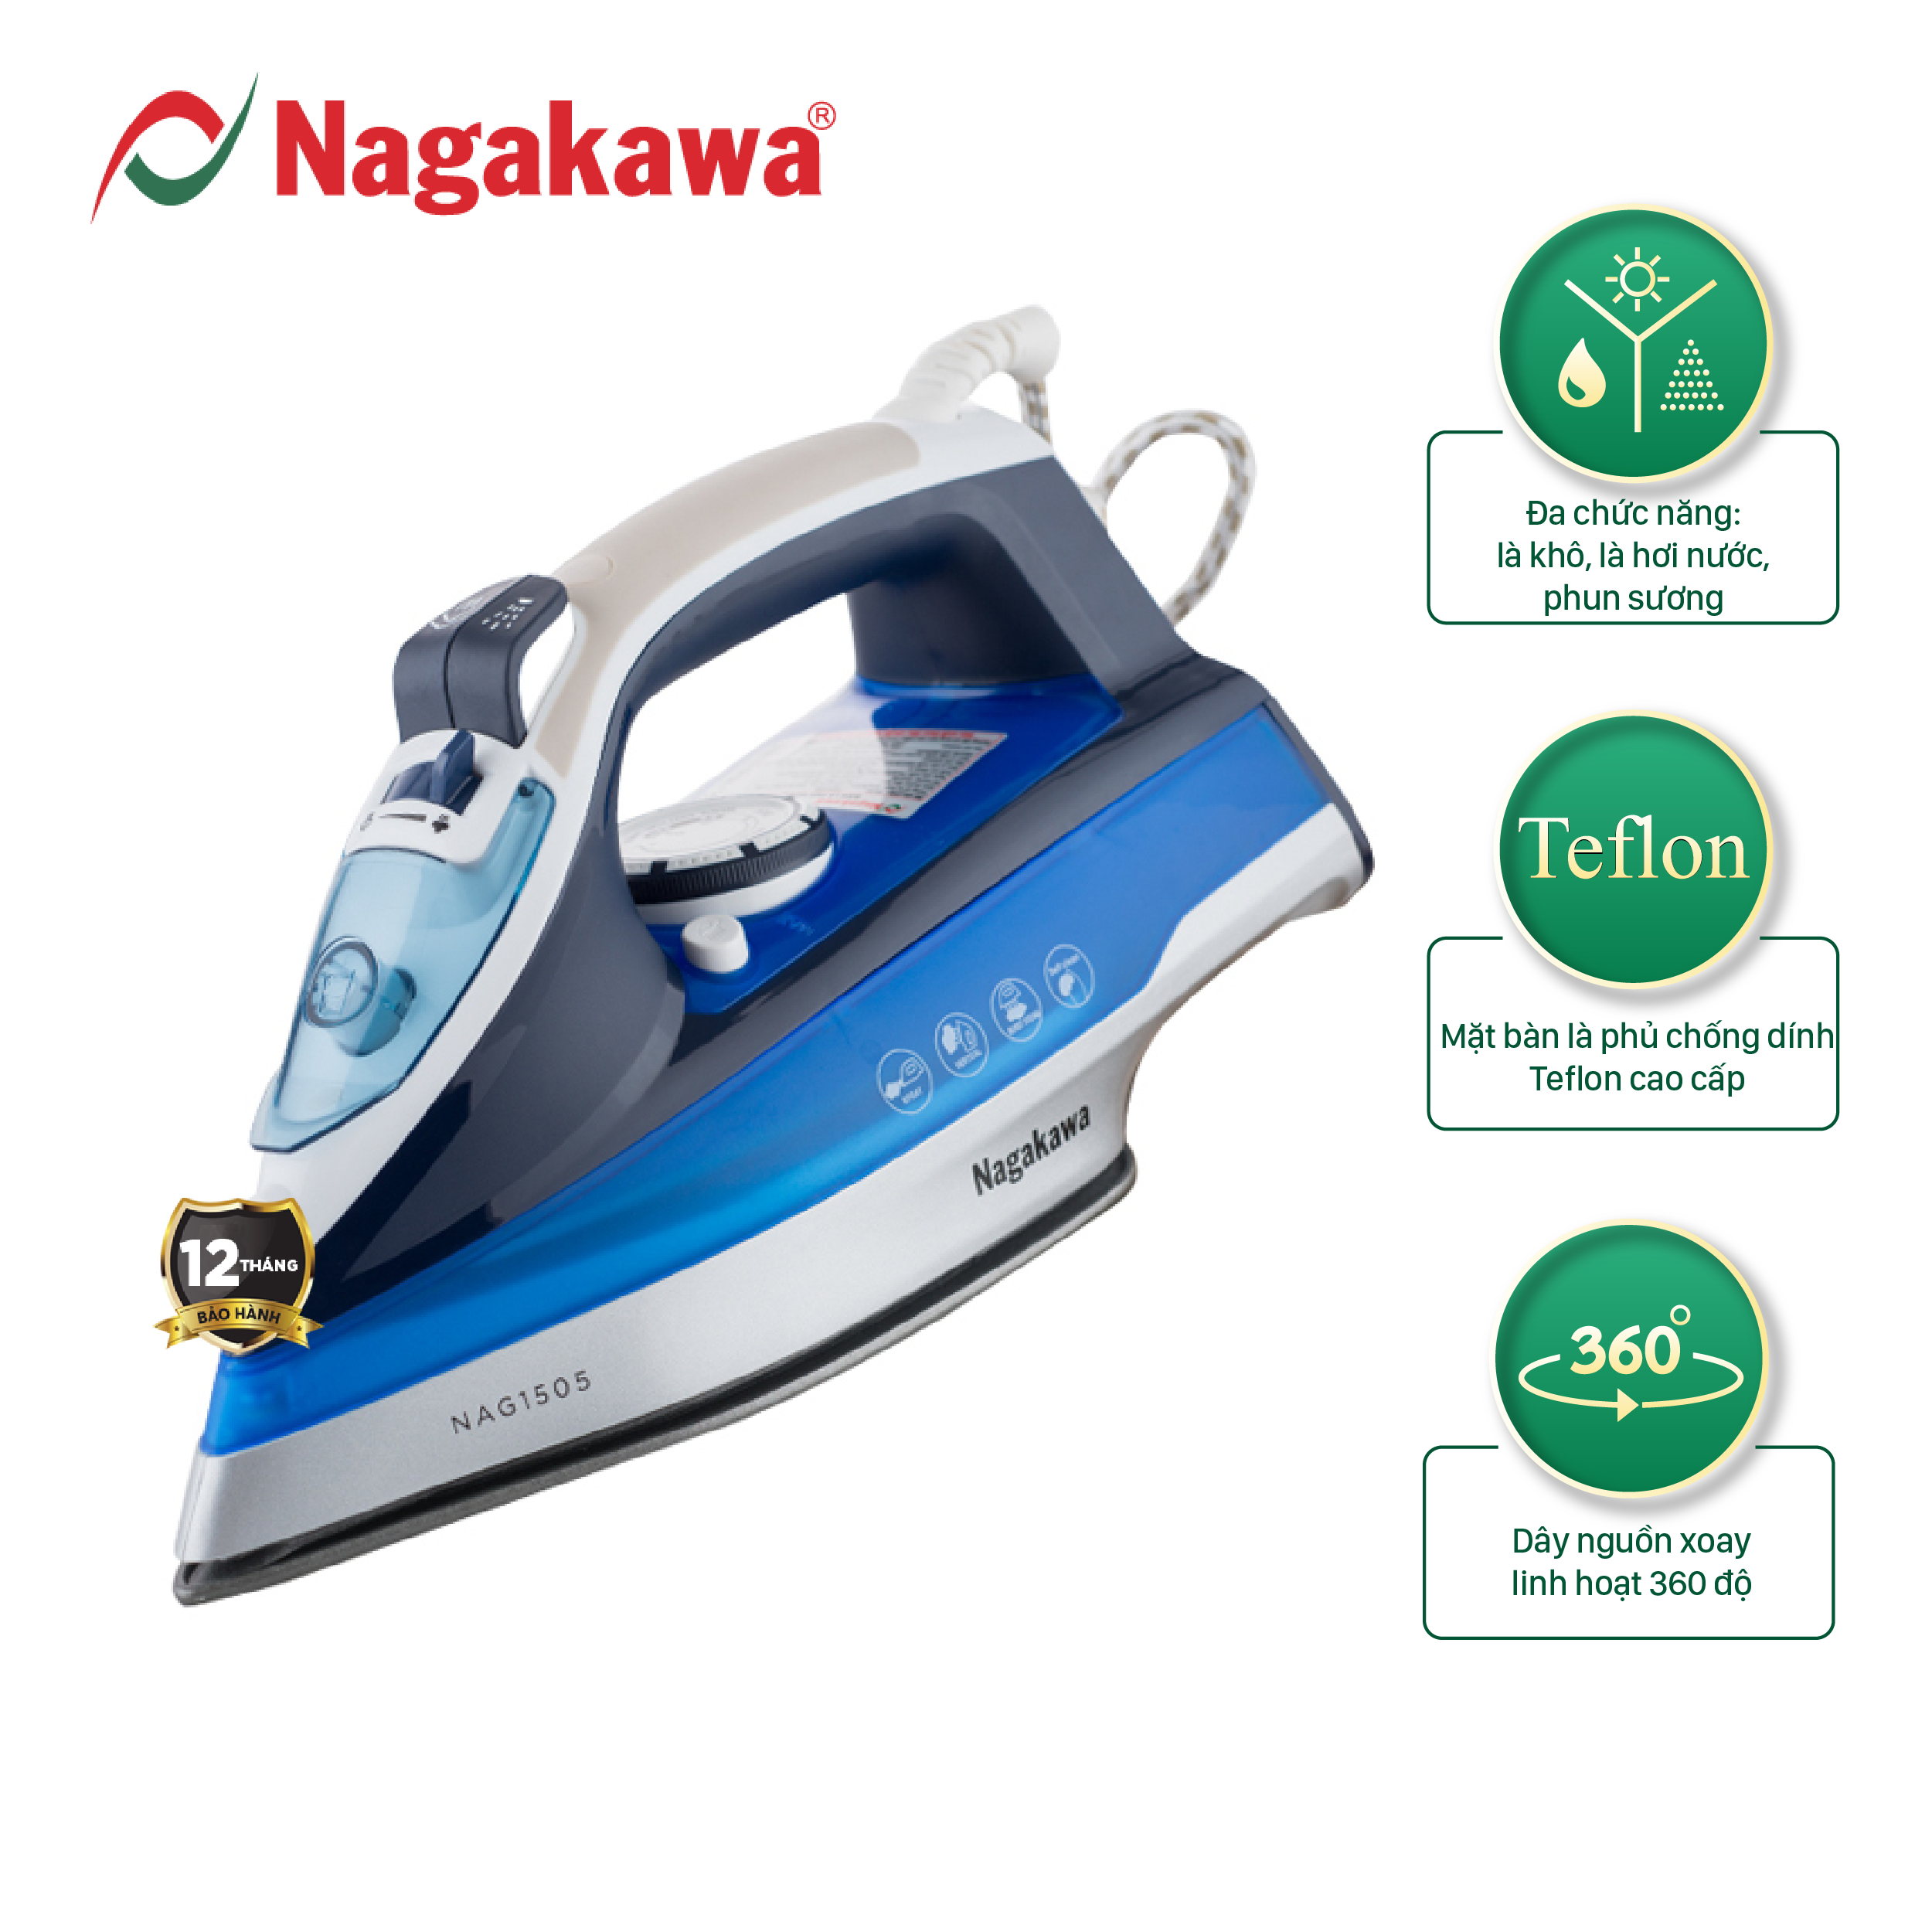 Bàn ủi hơi nước Nagakawa NAG1505, công suất 1200W, dùng cho mọi loại vải, chống dính cao cấp, chế độ ngắt tự động, bảo hành 12 tháng